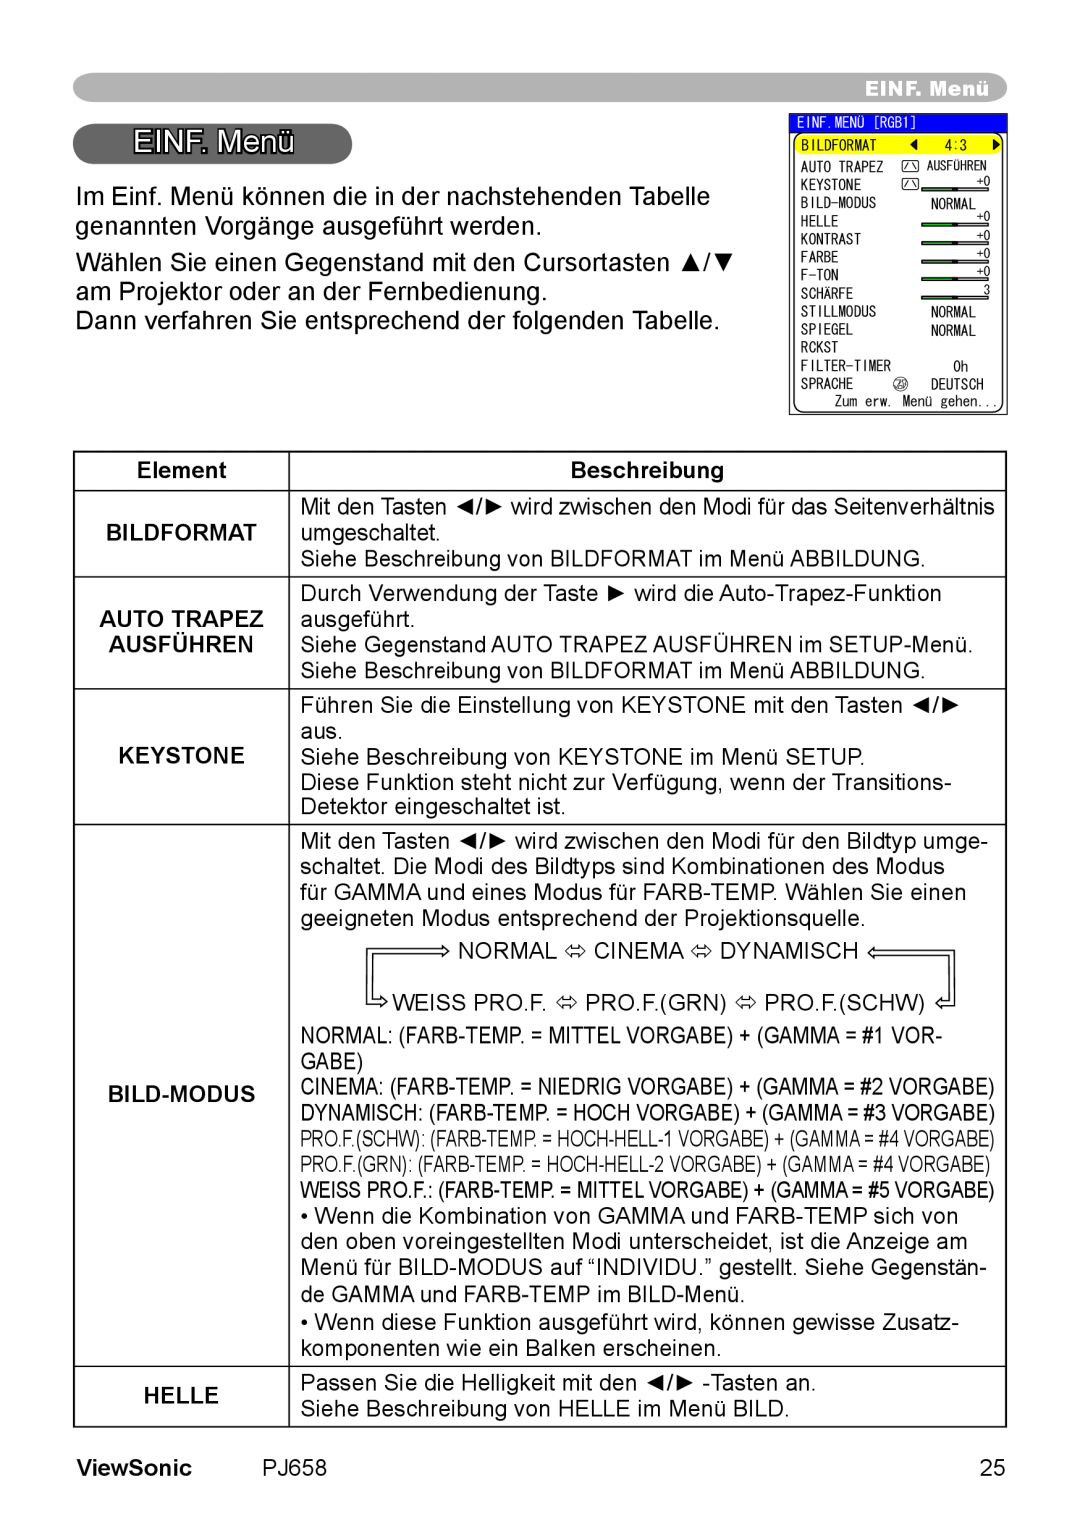 ViewSonic VS11361 manual EINF.Menü, Element, Beschreibung, Bildformat, Auto Trapez, Ausführen, Keystone, Bild-Modus, Helle 